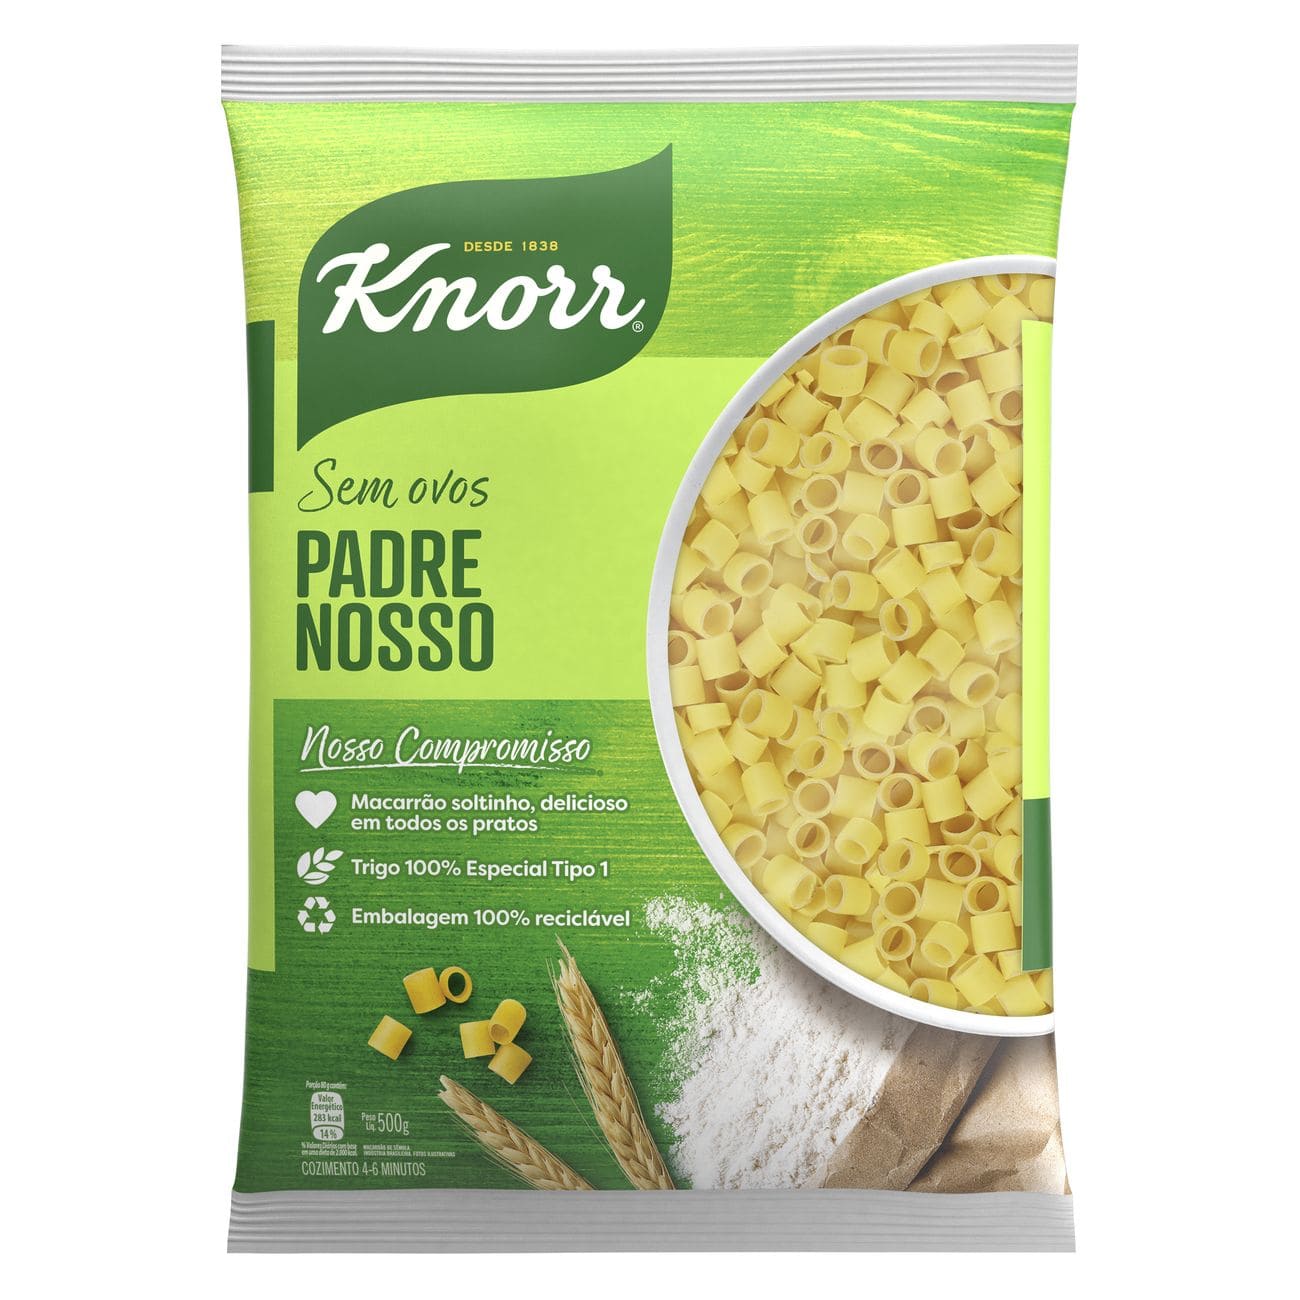 Macarrão Padre Nosso Knorr Sêmola 500g